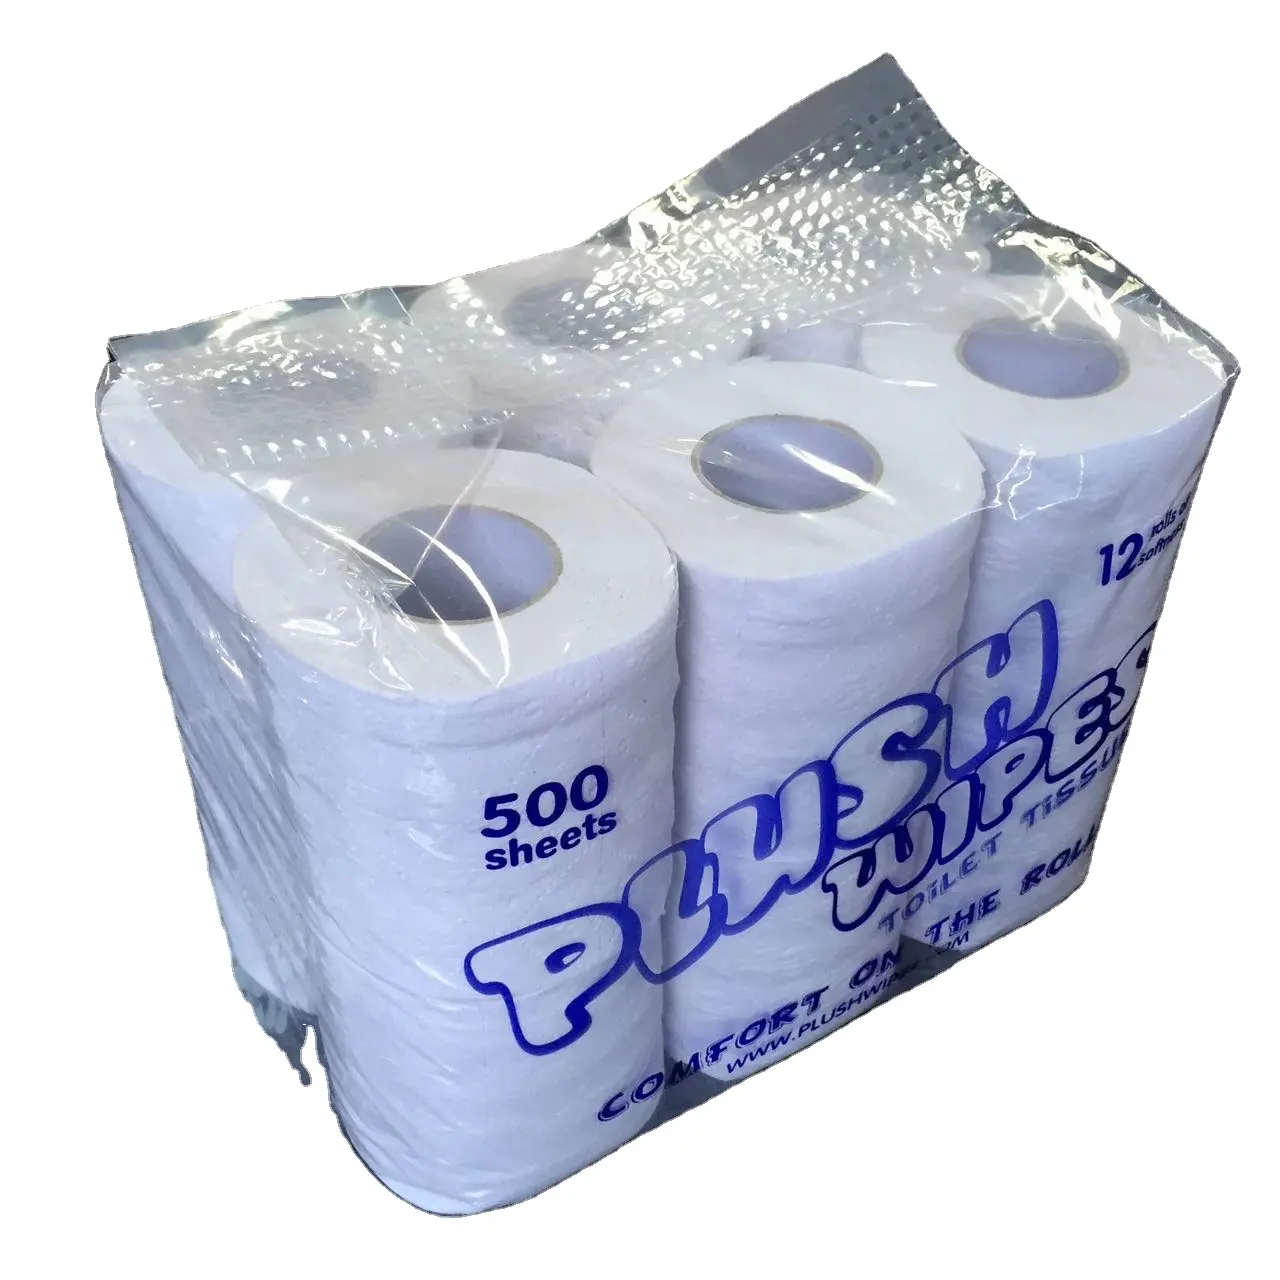 Preços por atacado enorme papel higiênico rolo de papel tissue de exportação em massa para o mercado DOS EUA preço barato alta qualidade de polpa de bambu